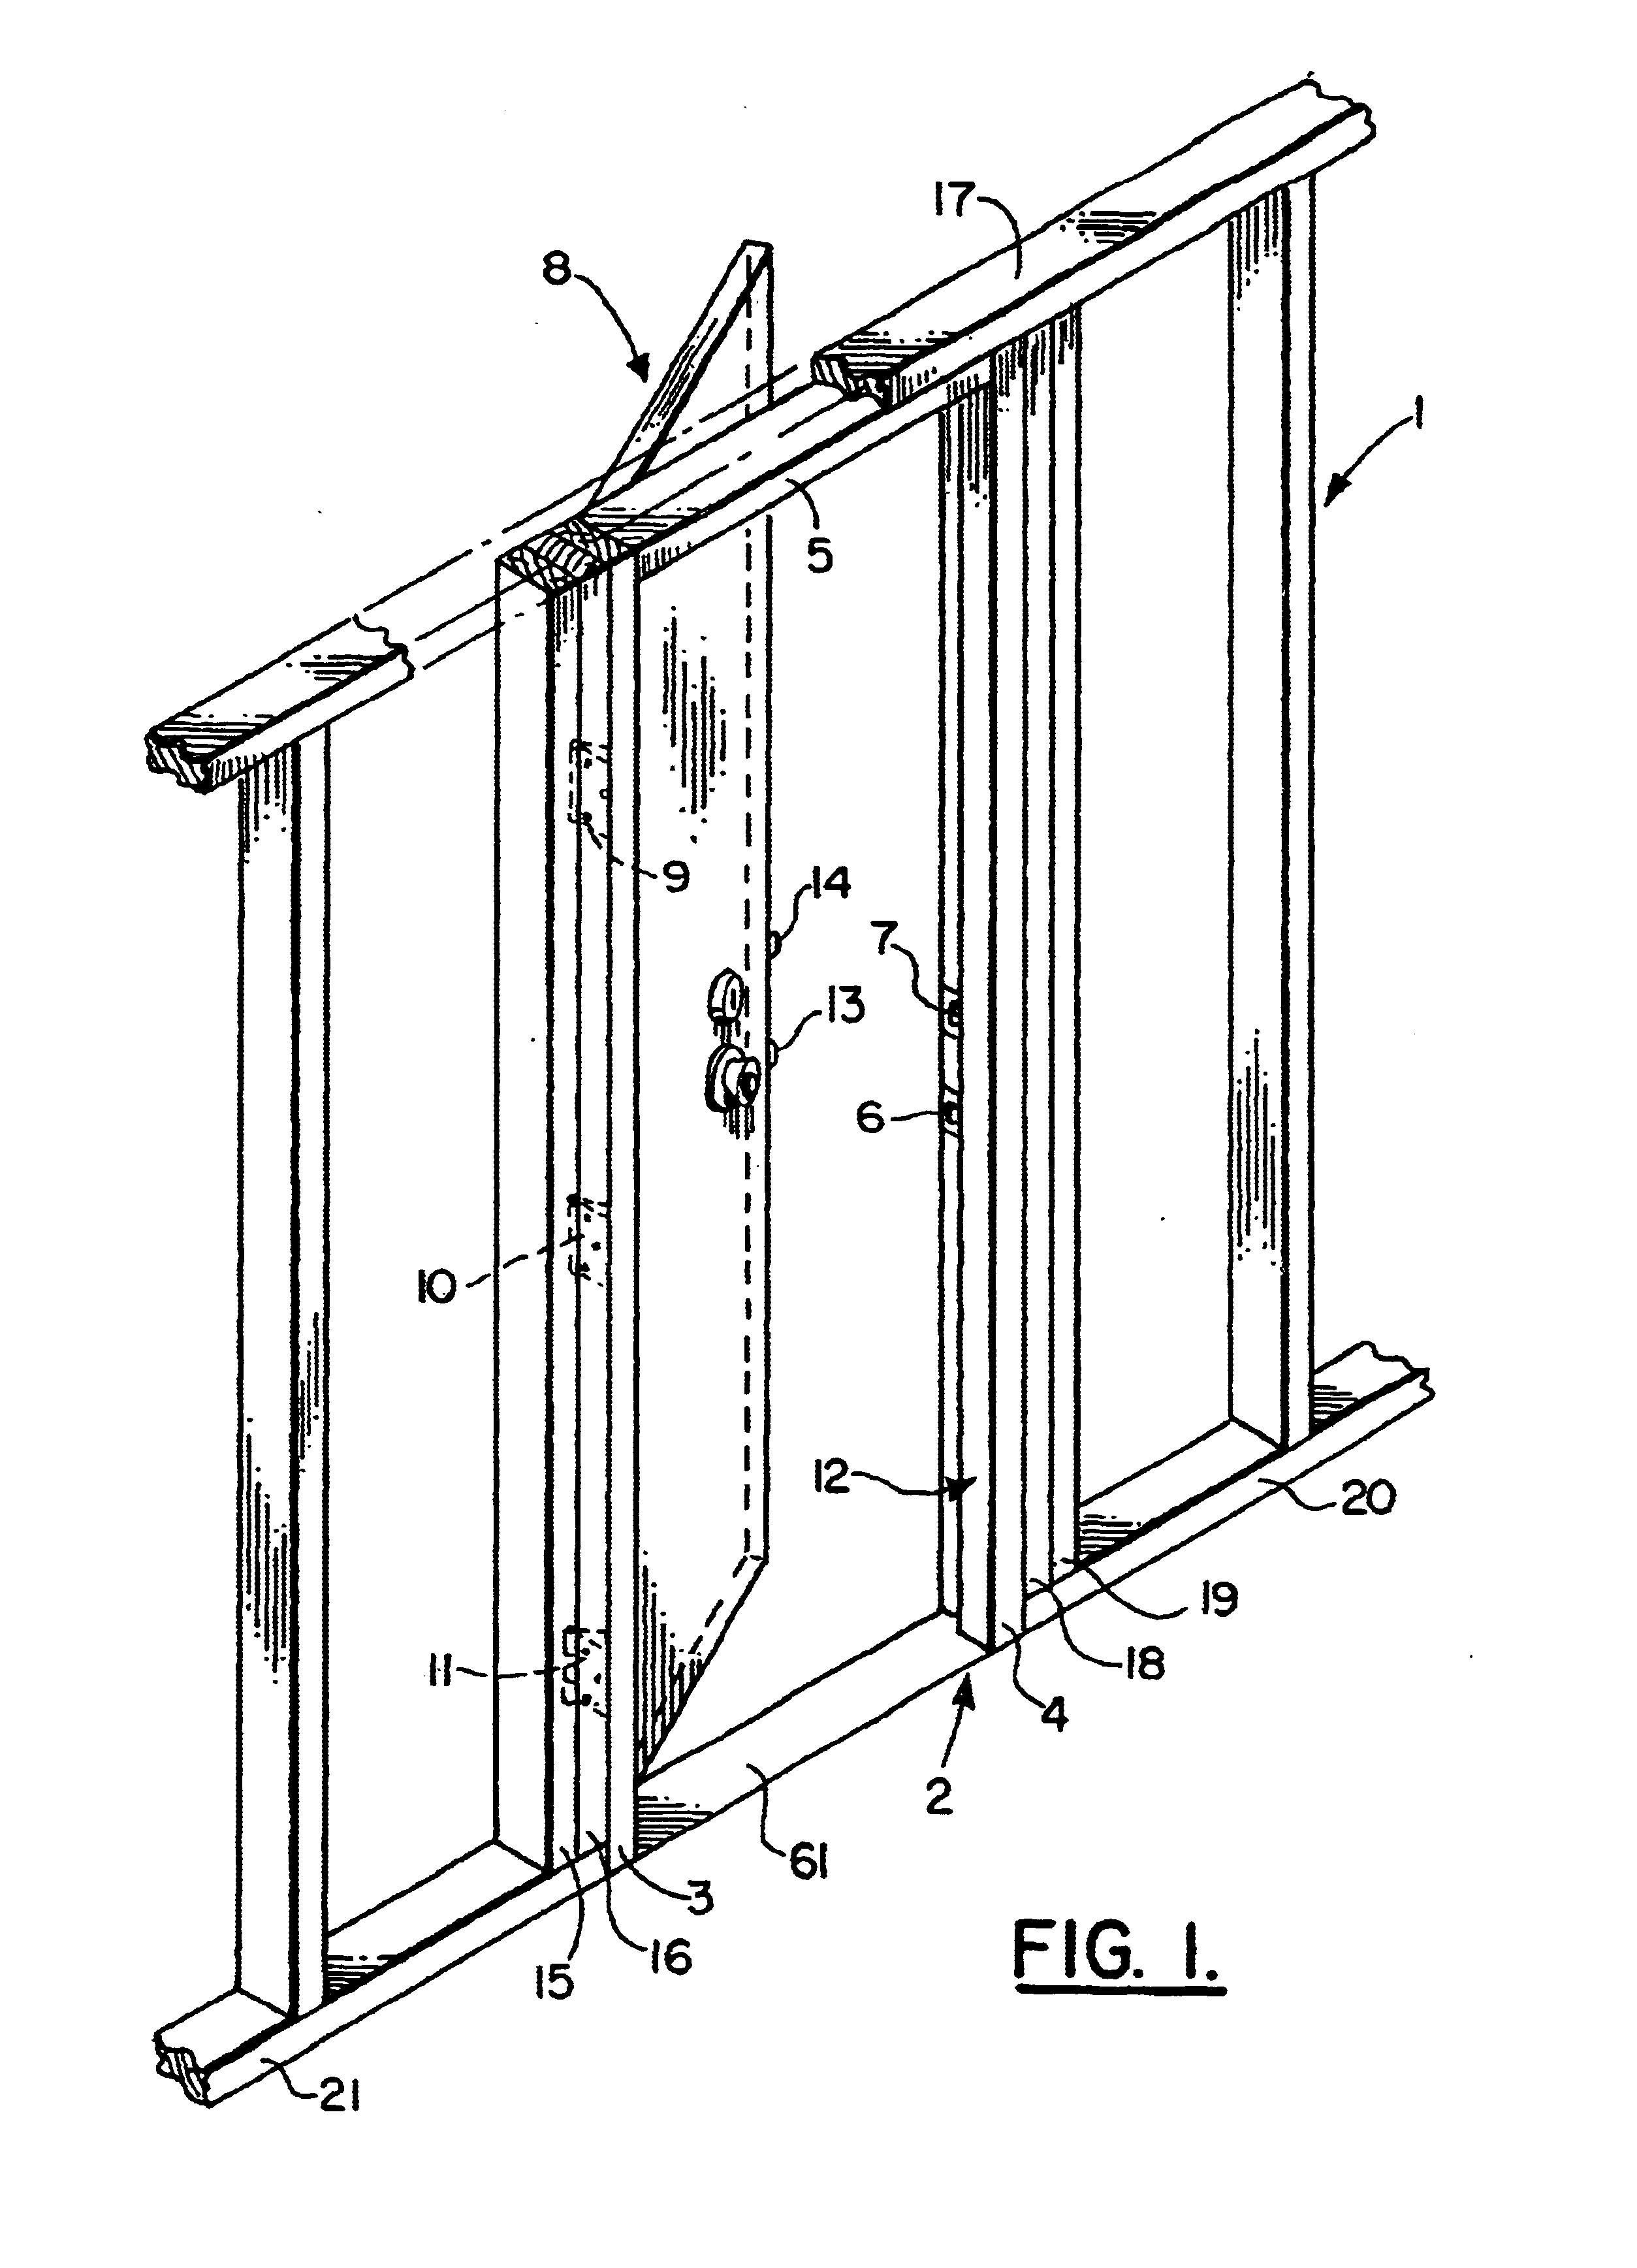 Reinforcing system for a door frame